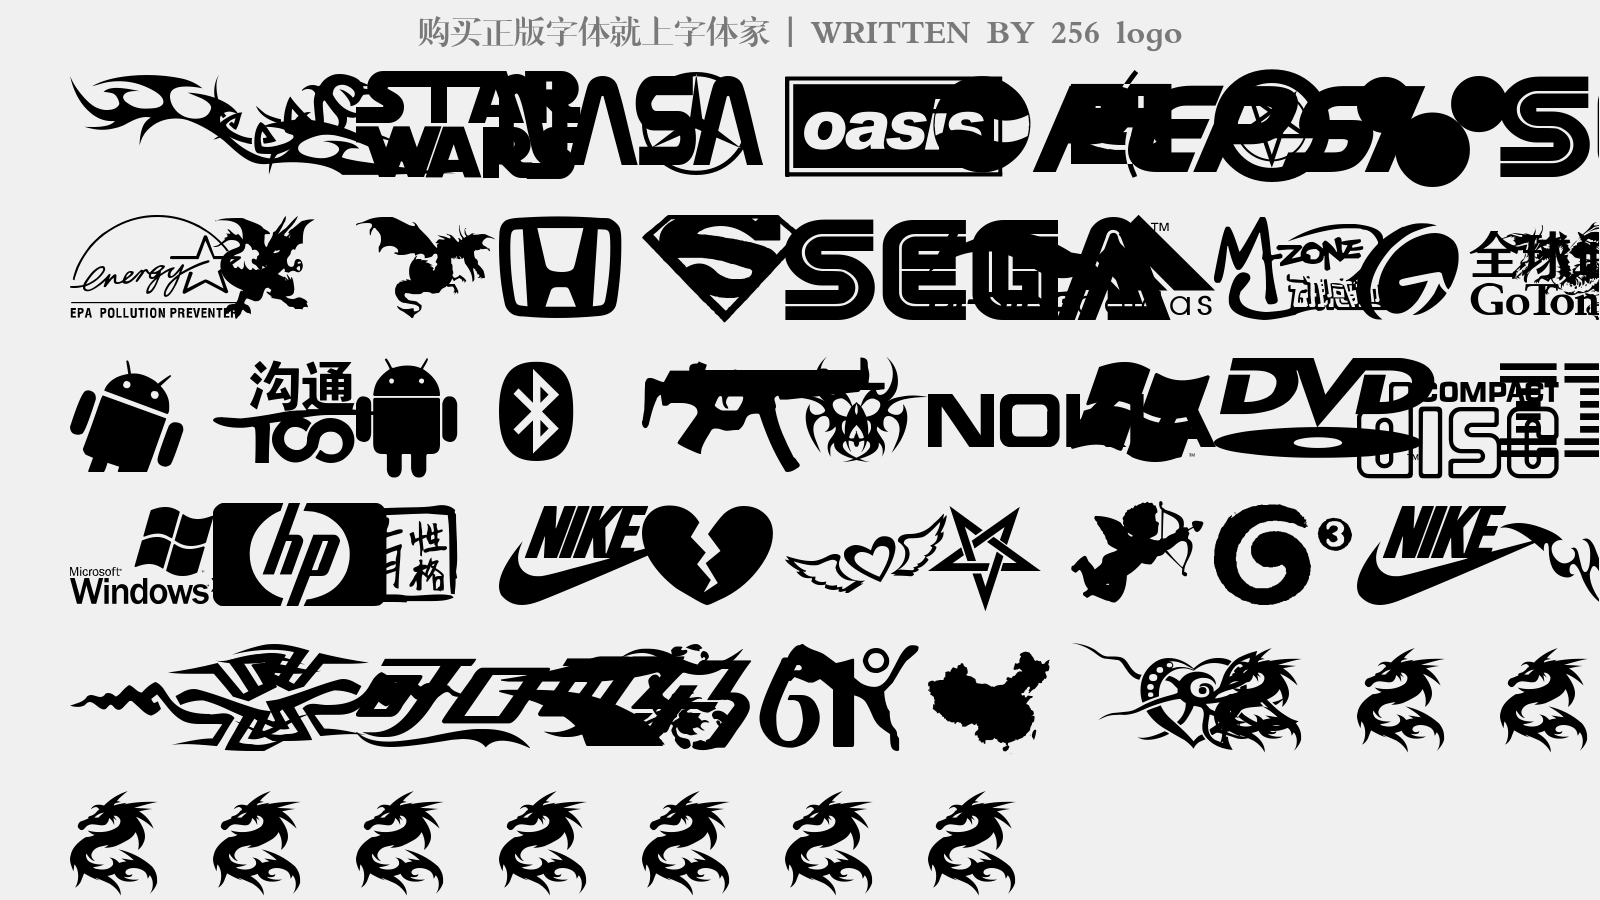 256 logo - 大写字母/小写字母/数字